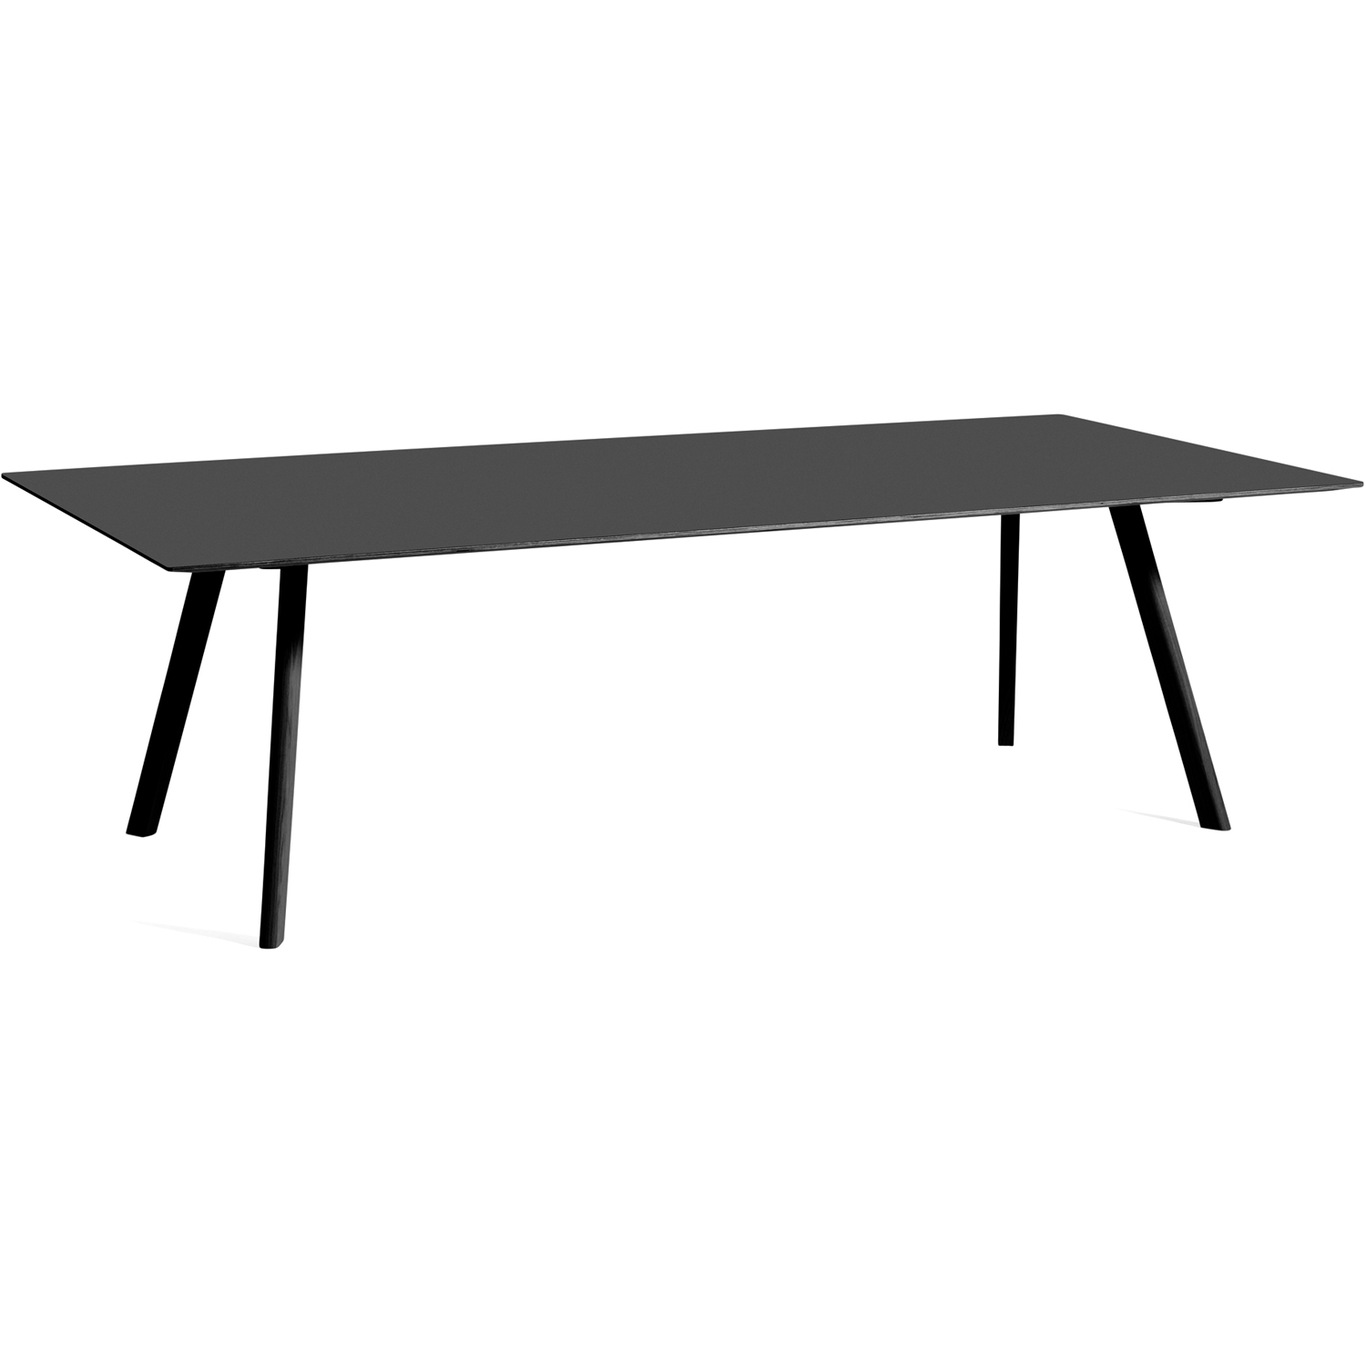 CPH 30 Tisch 250x120 cm, Schwarz Mit Wasserlack Behandelte Eiche / Schwarz Linoleum